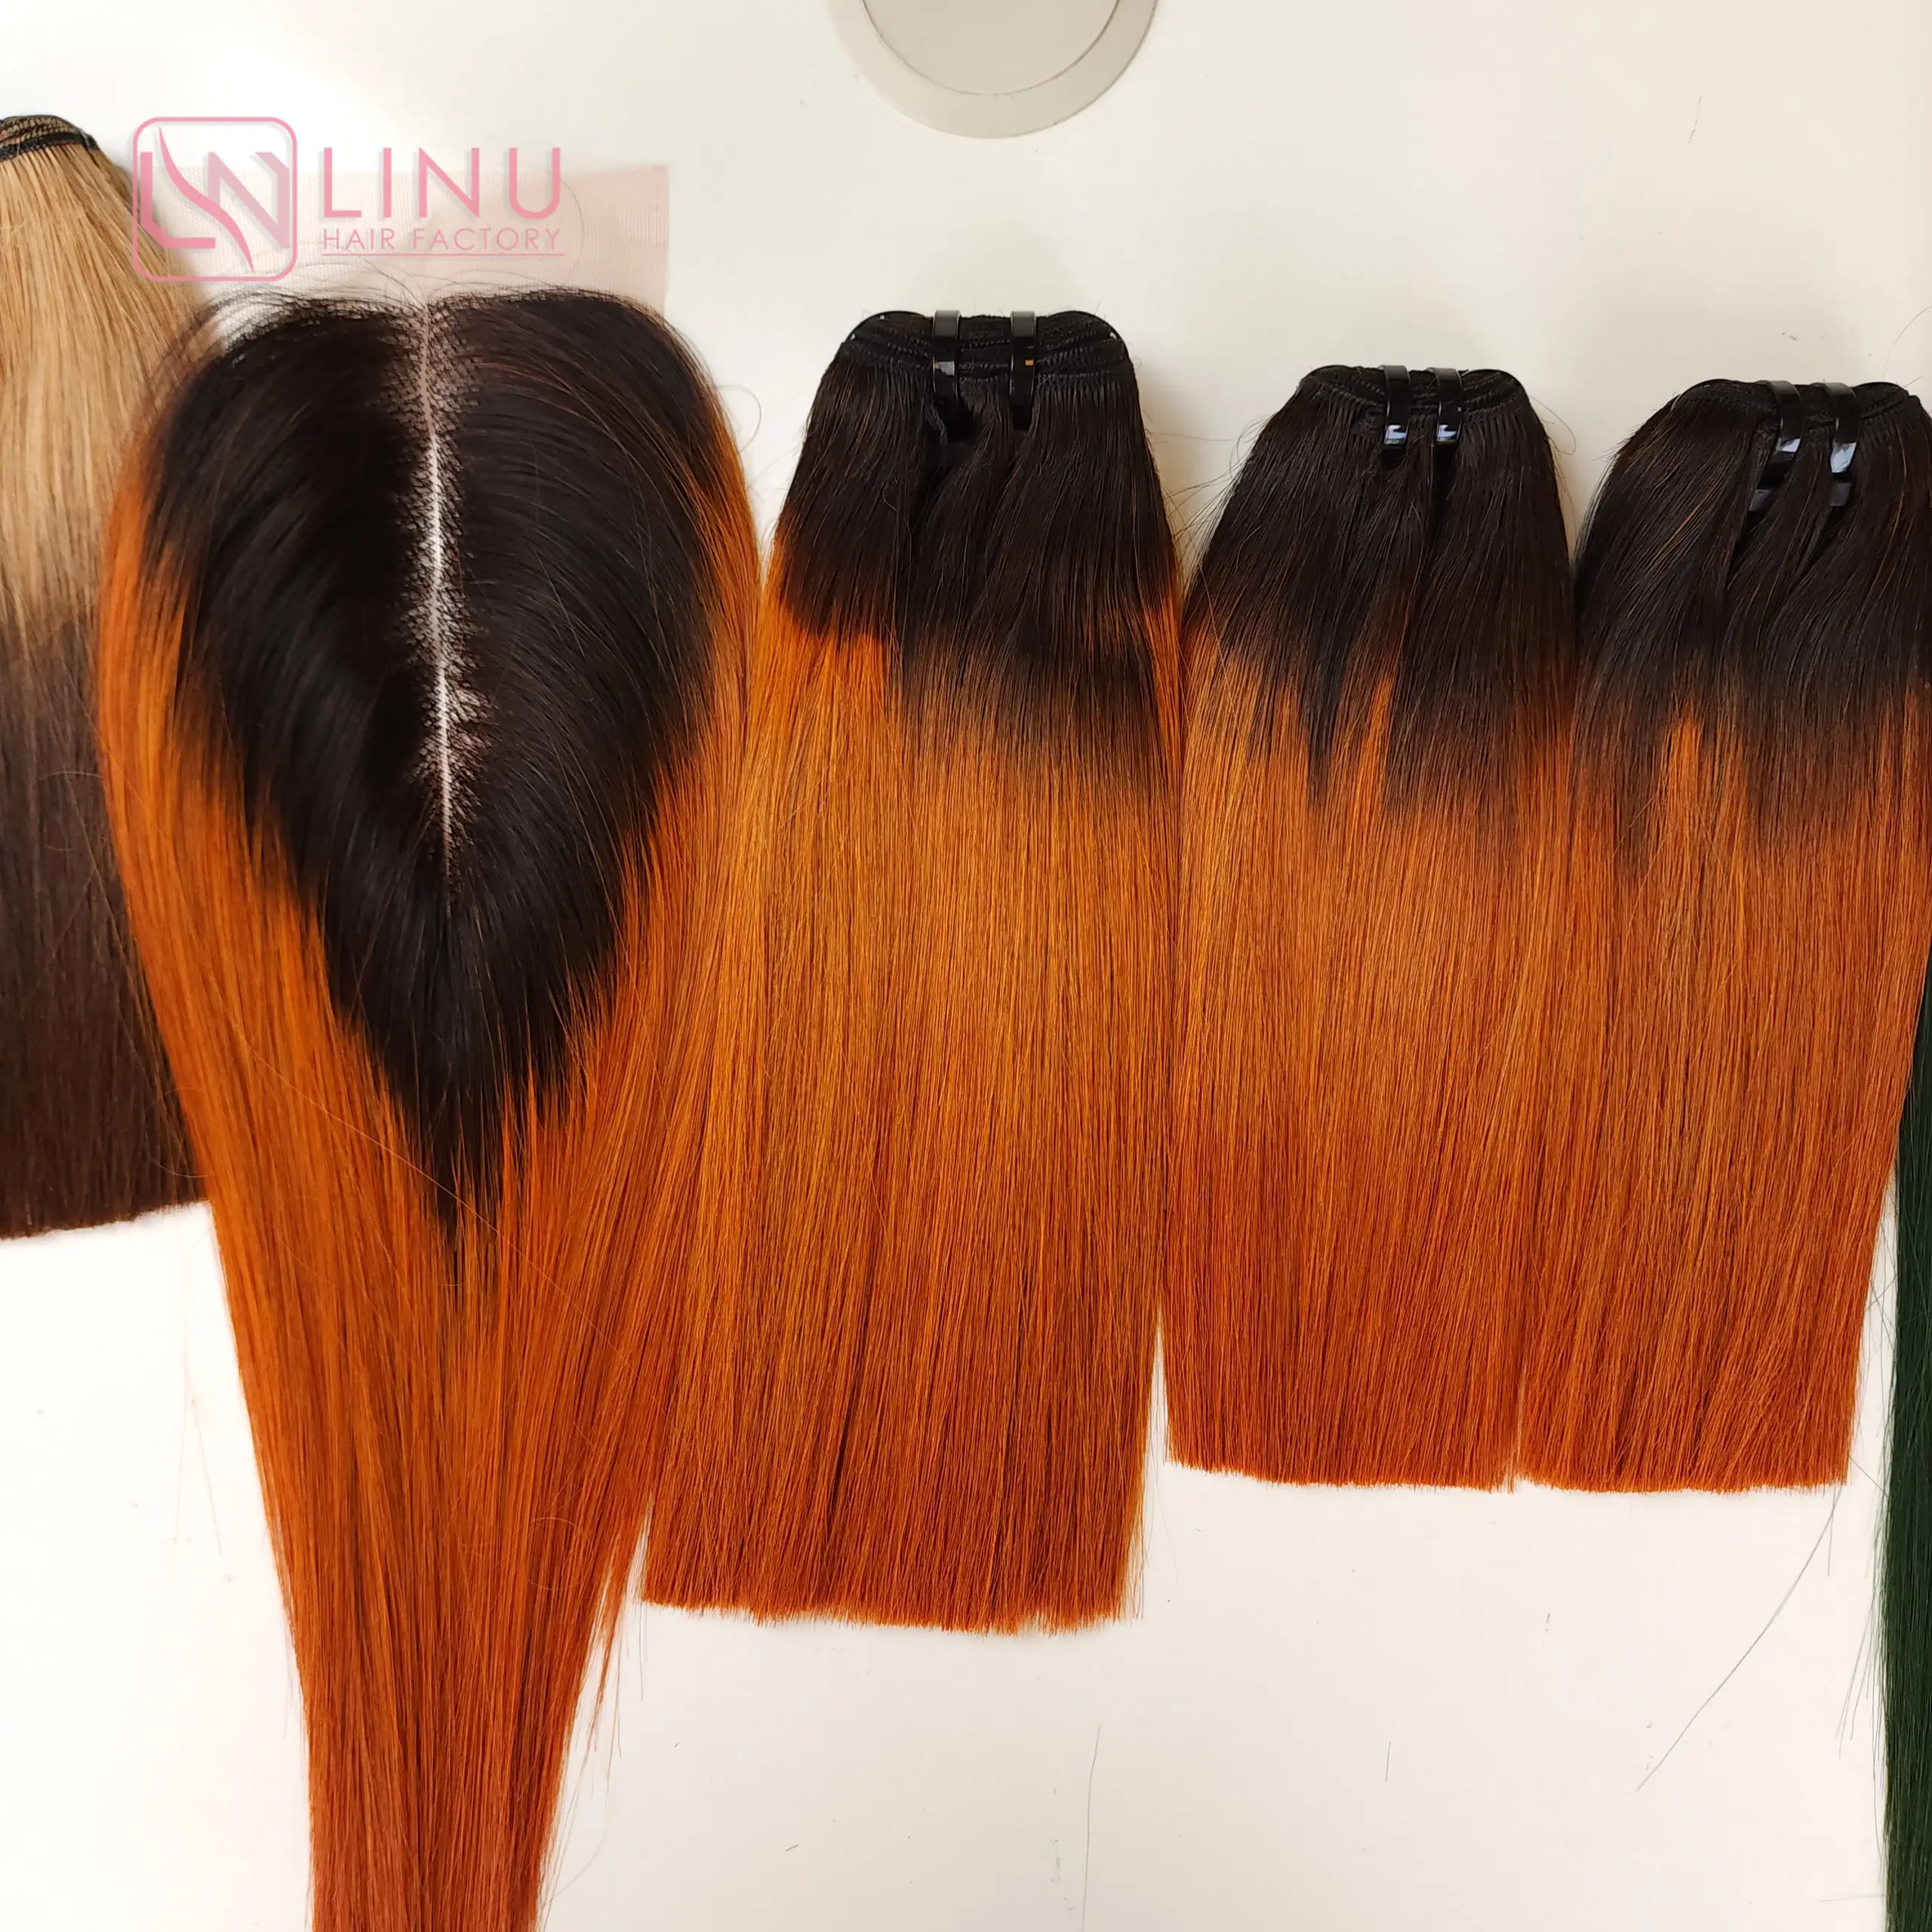 El cabello crudo vietnamita más popular, cabello degradado sin pegamento, mezcla de naranja quemado, mechones de cabello de Color negro teñidos, tan suave y suave